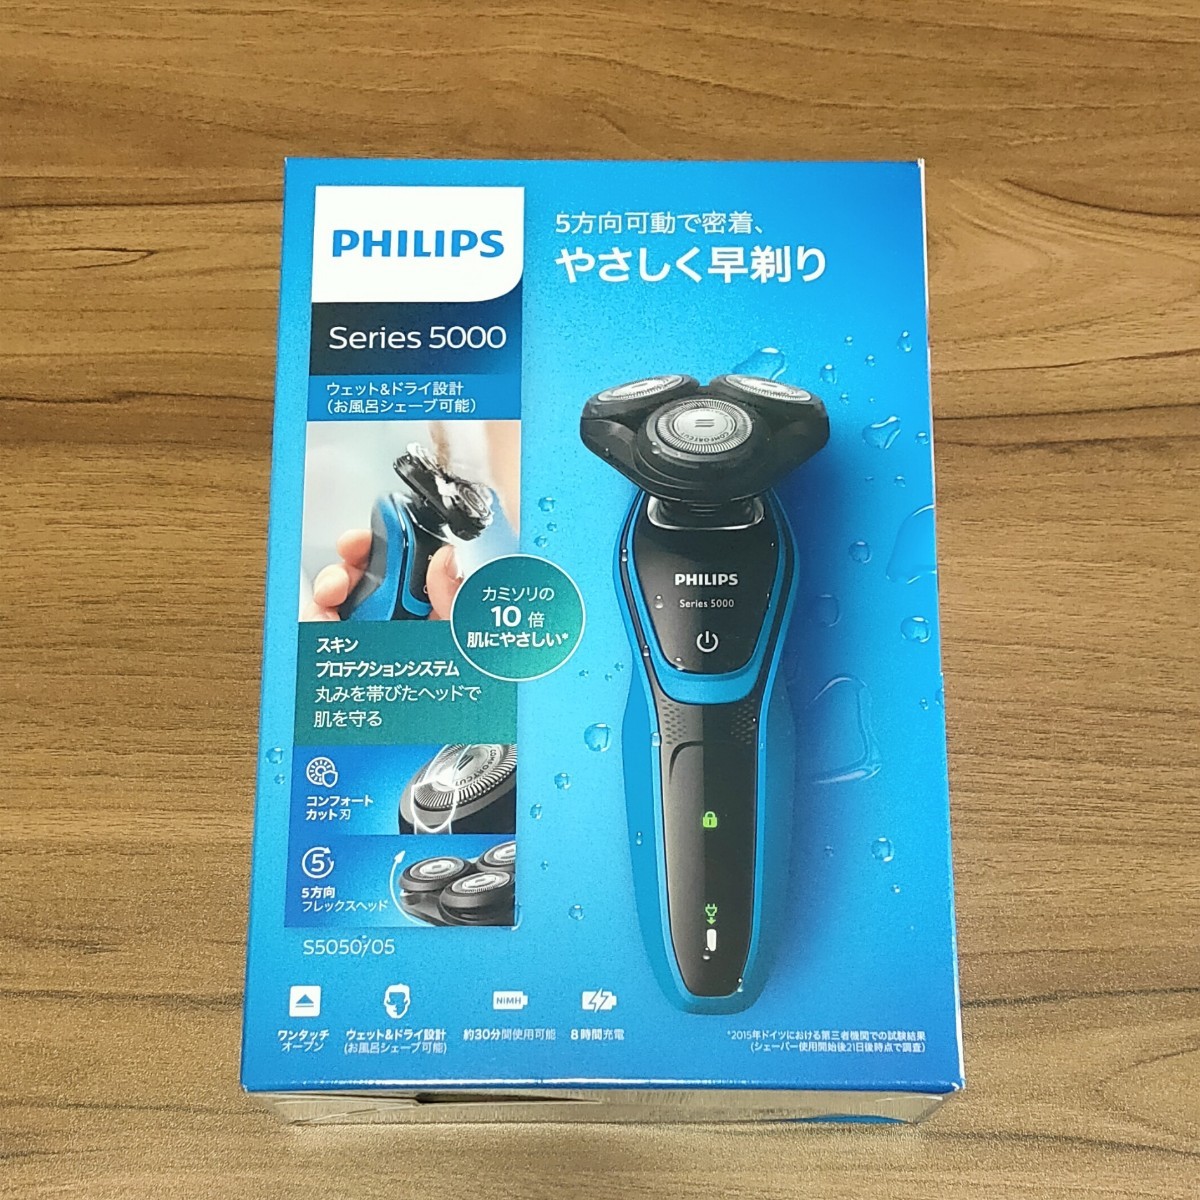 PHILIPS 電気シェーバー フィリップス メンズ シェーバー S5050/05 水洗い可能 新品 未開封 送料込み